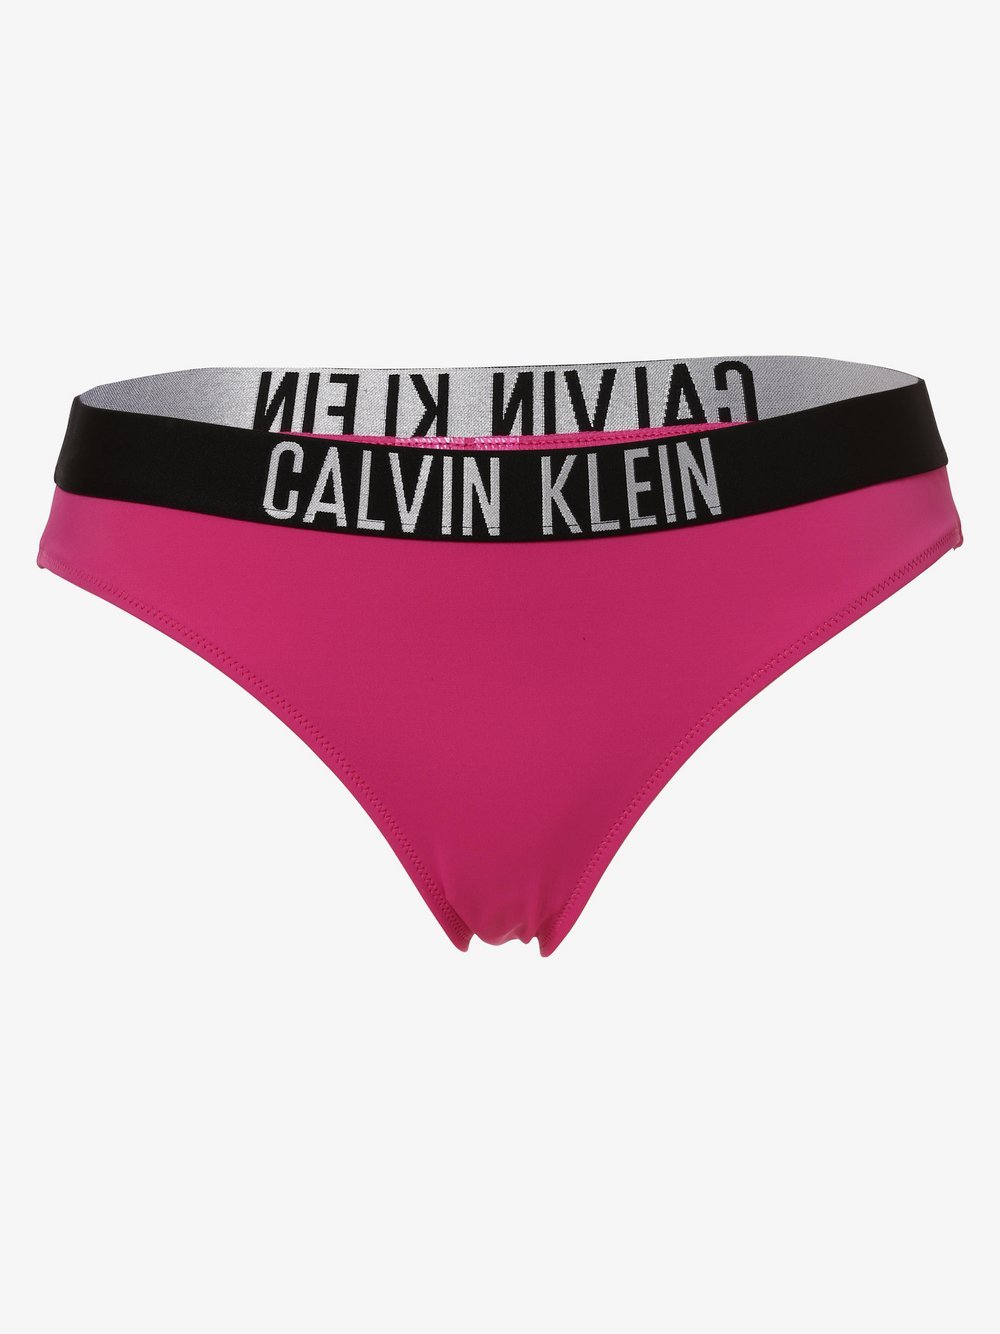 Calvin Klein - Damskie slipki od bikini, różowy